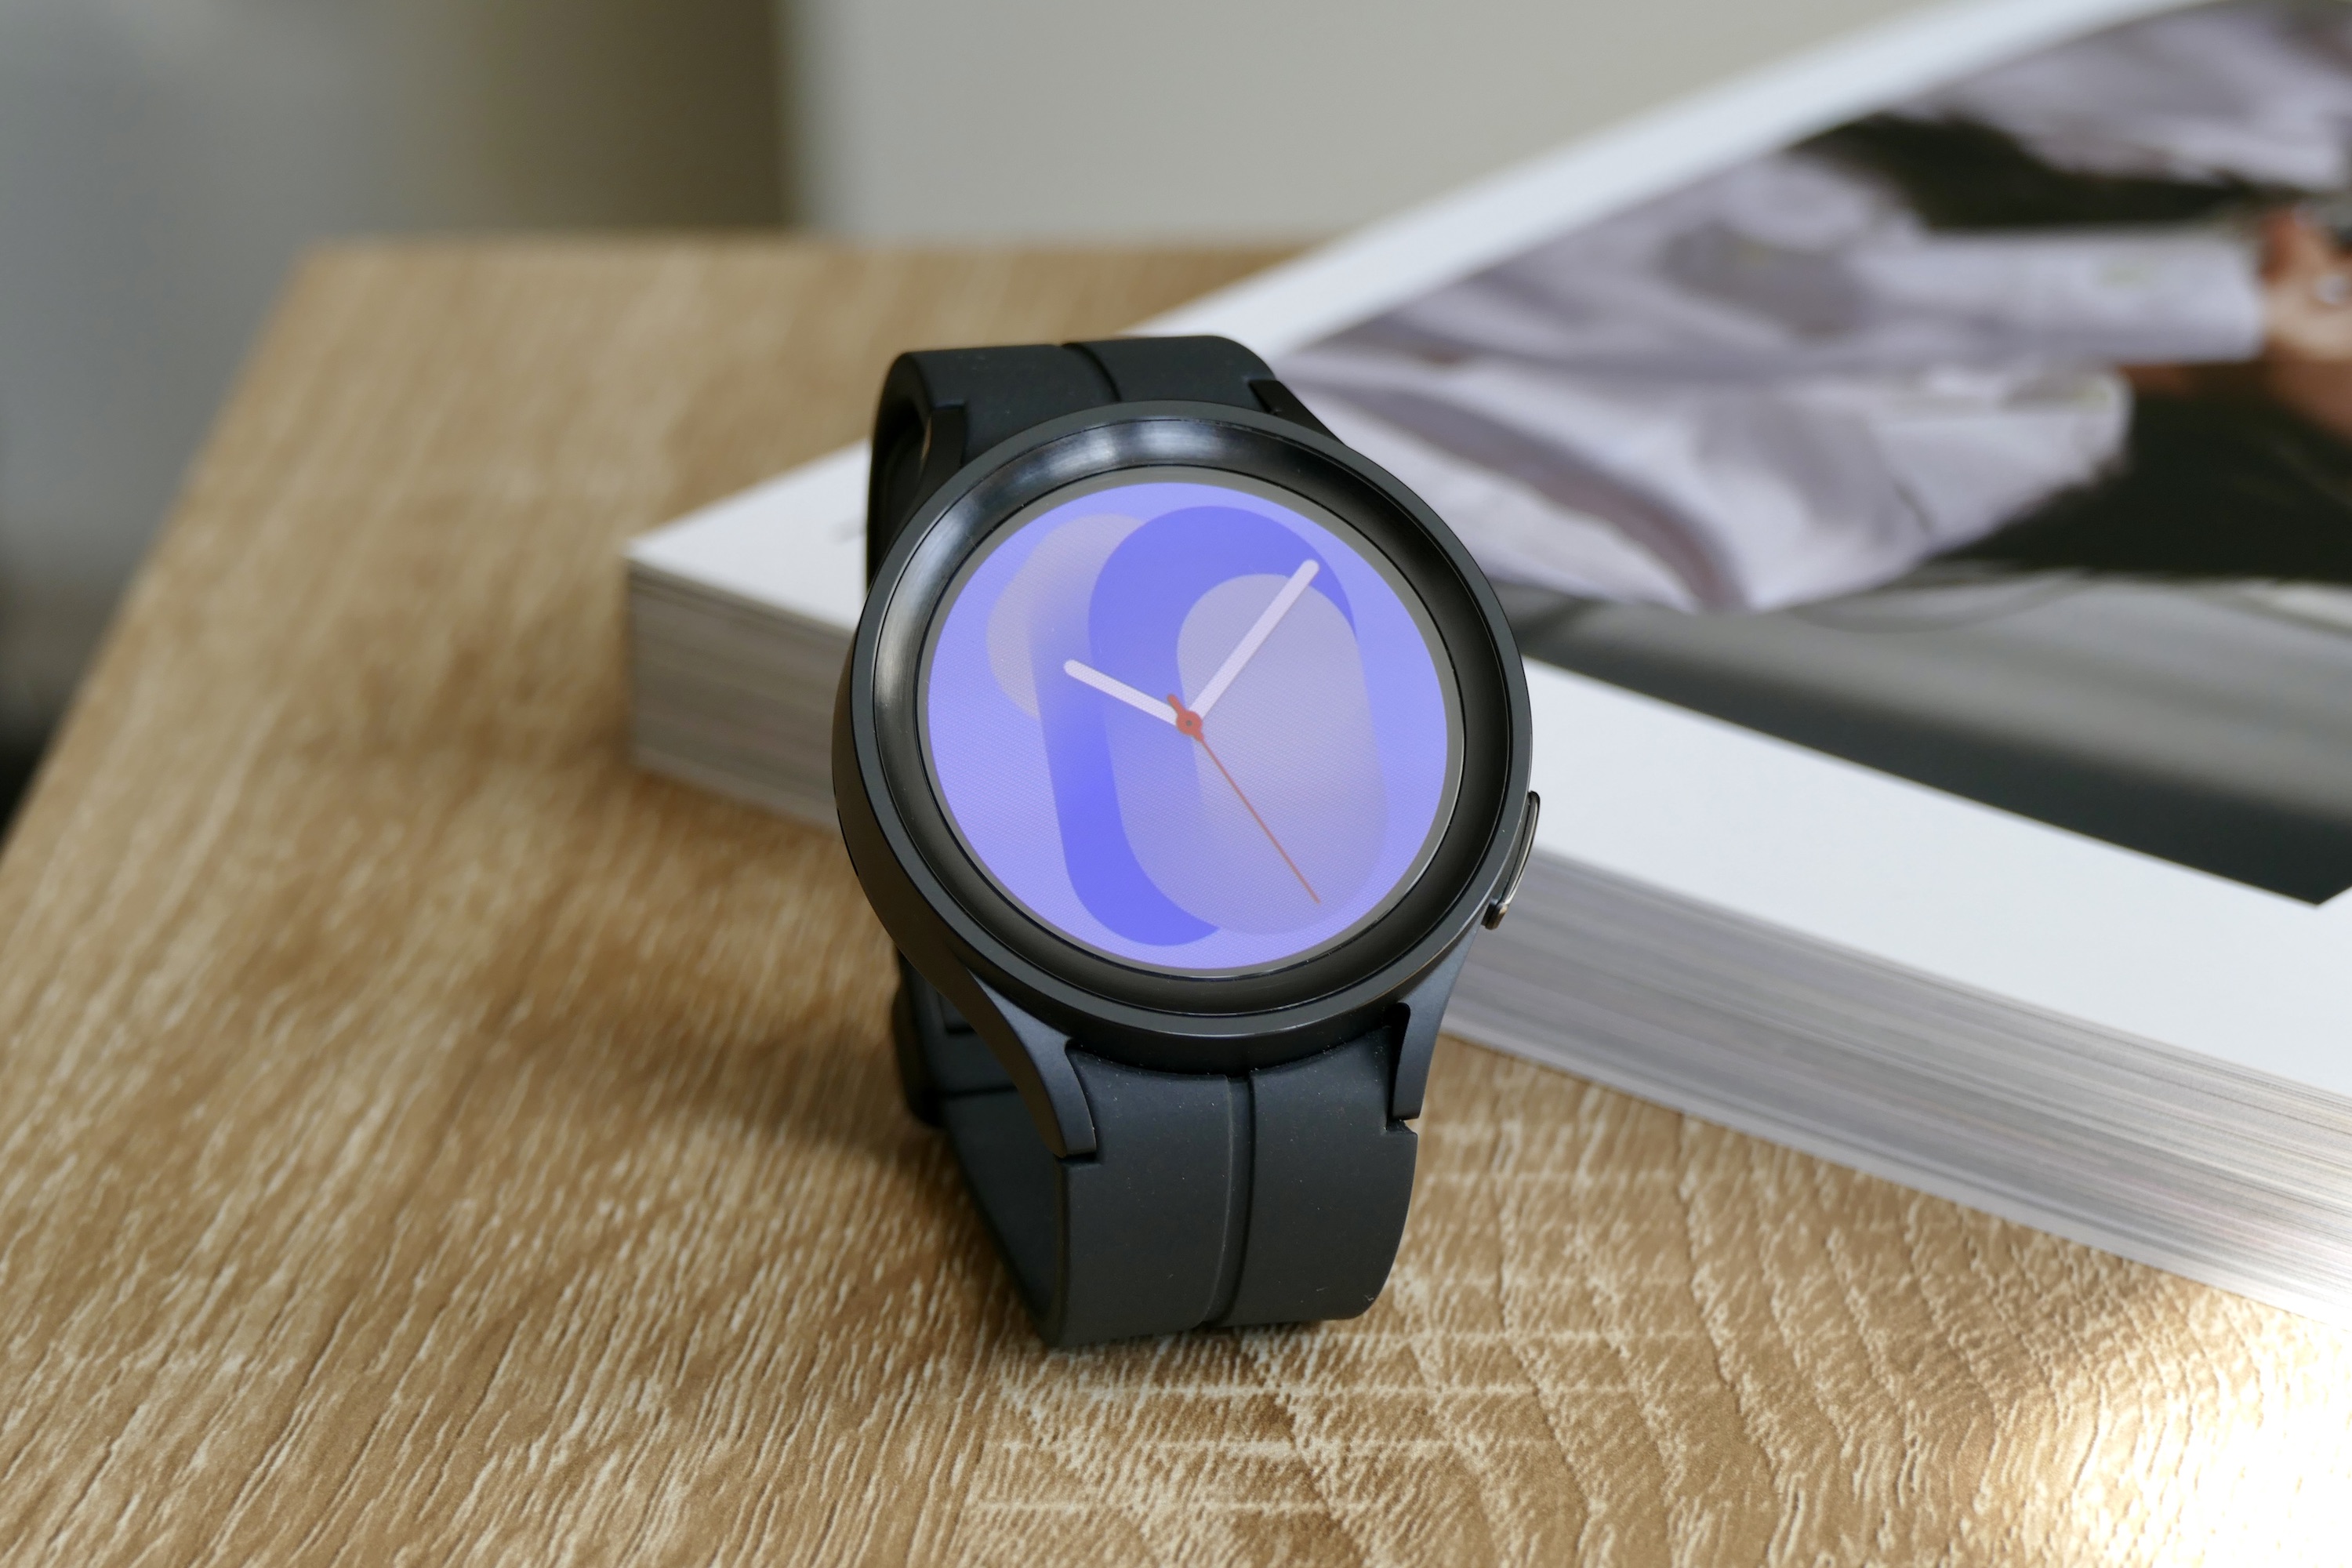 Galaxy Watch 5 Pro: Hãy khám phá chiếc đồng hồ thông minh Samsung Galaxy Watch 5 Pro đầy ấn tượng với thiết kế sang trọng và tính năng cải tiến, mang lại sự tiện lợi và đẳng cấp cho cuộc sống của bạn.